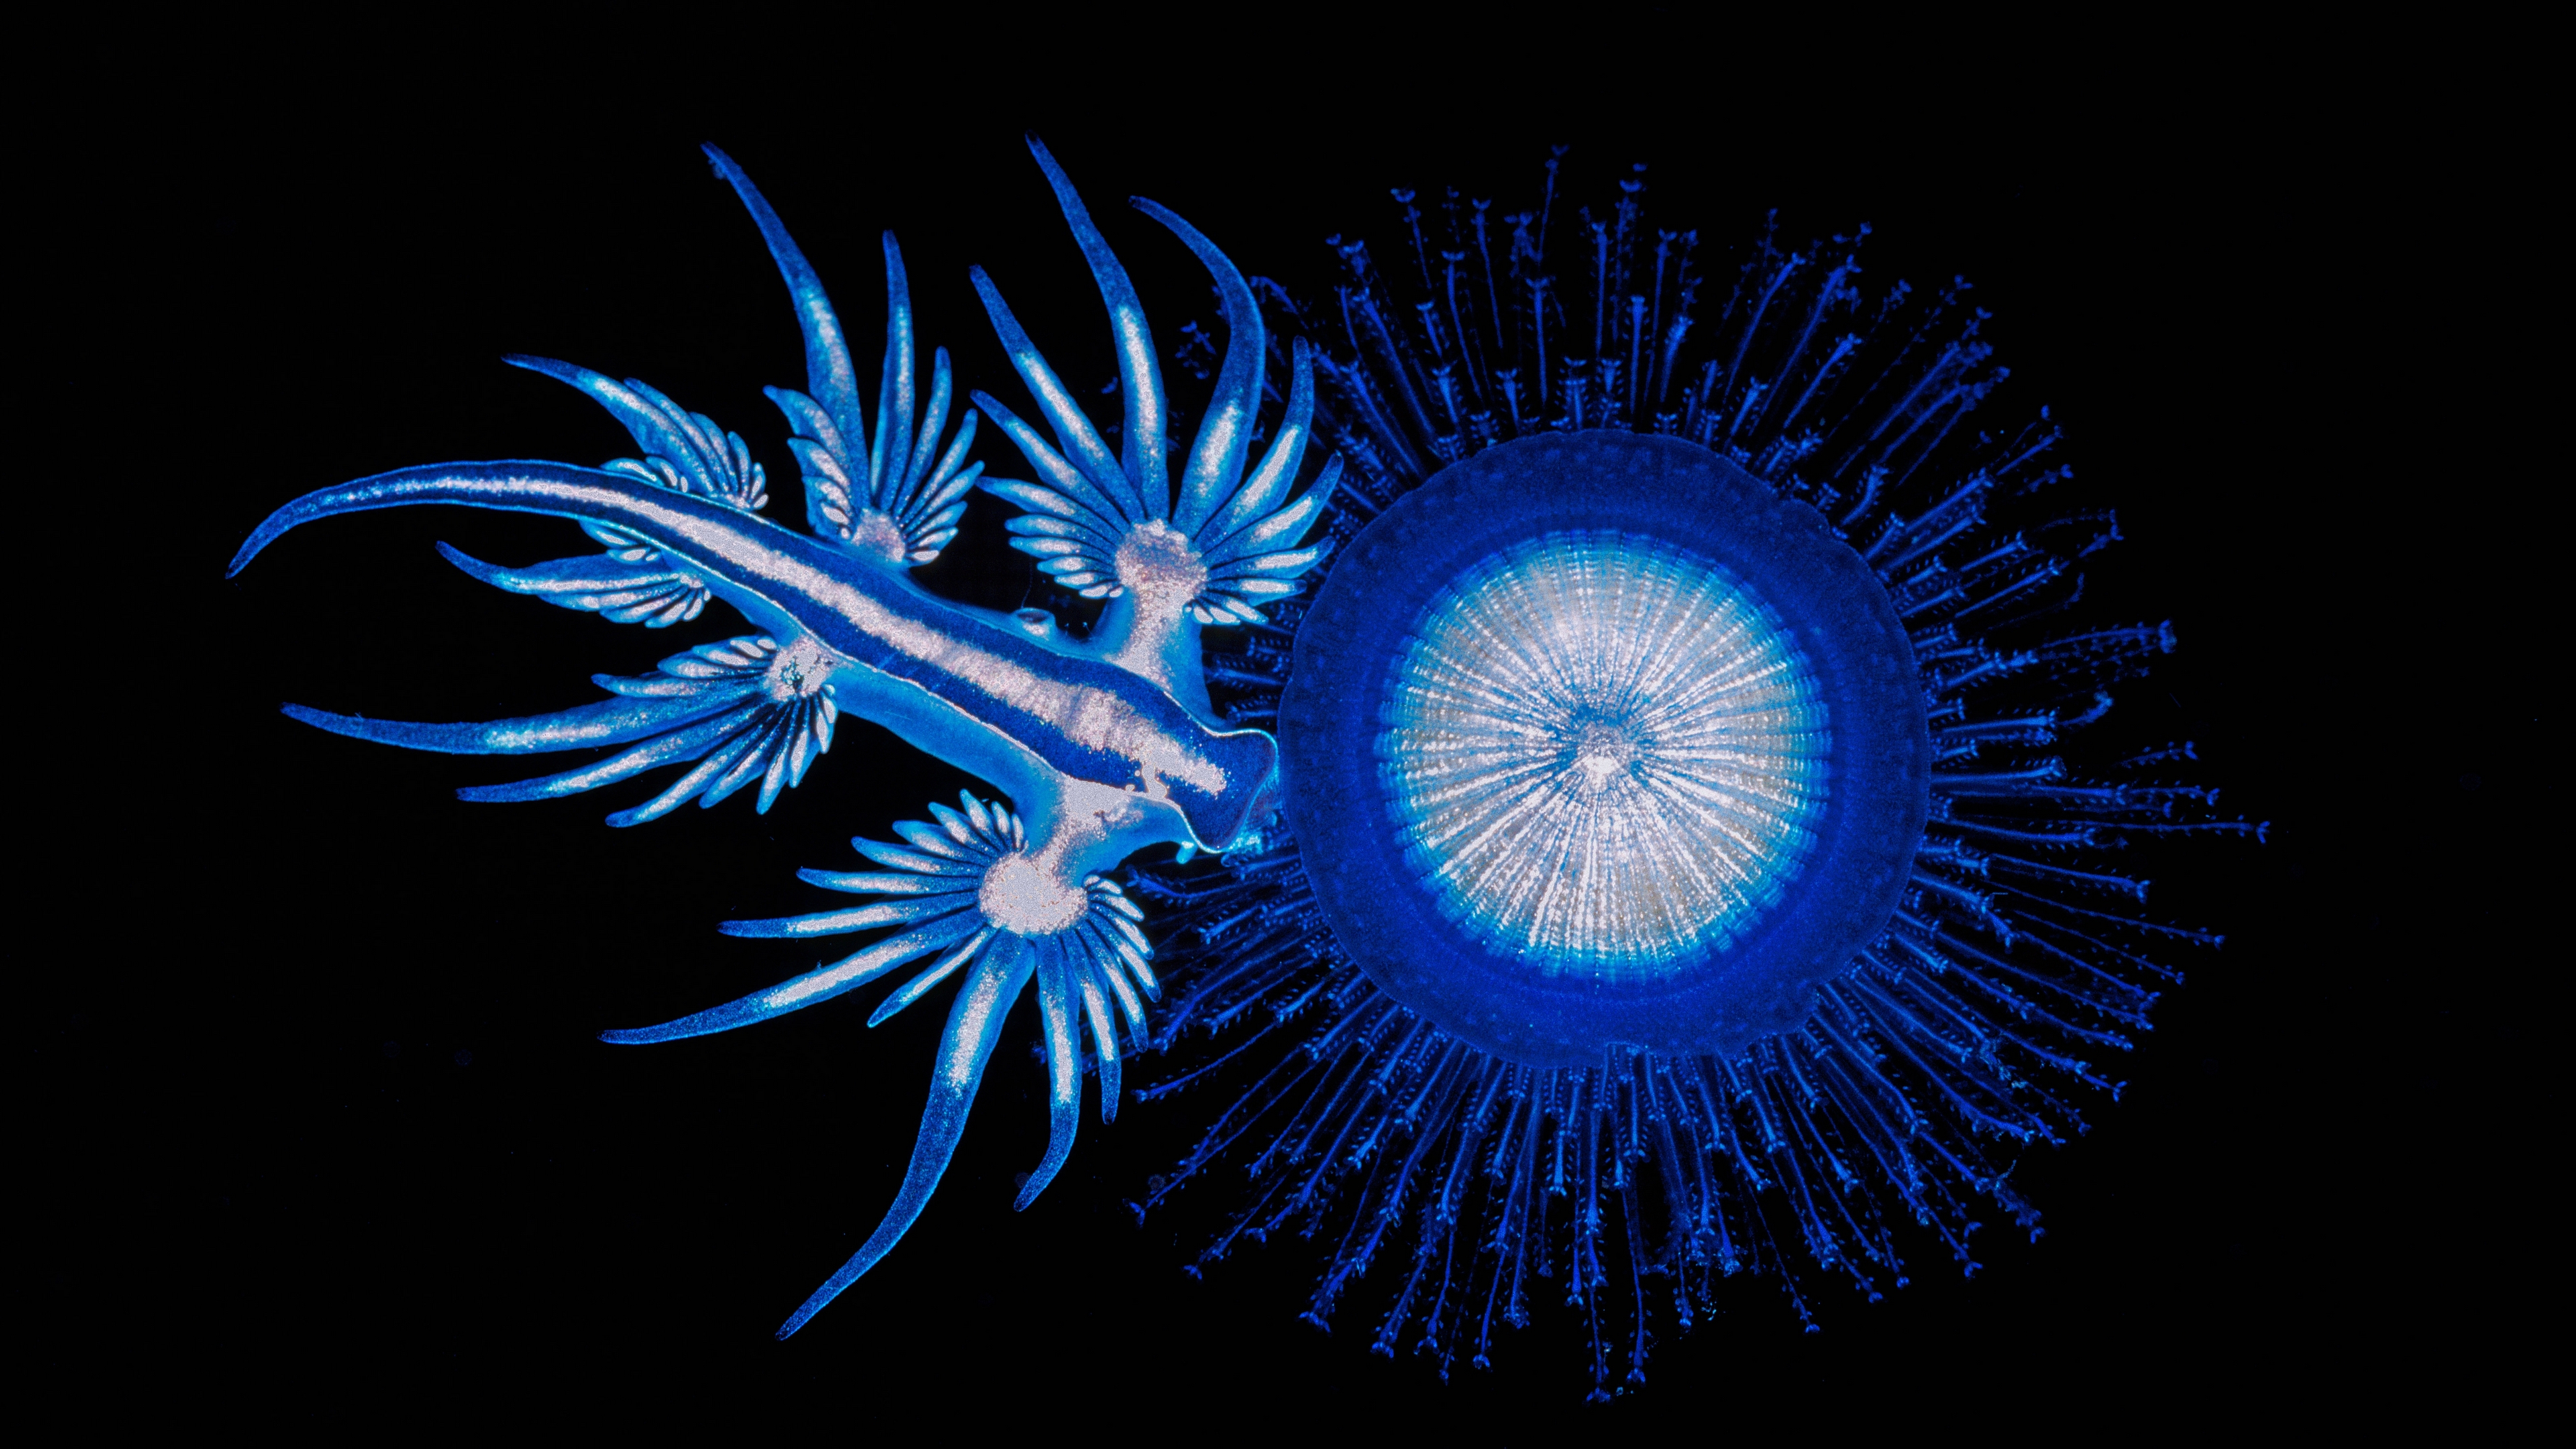 绘制海洋深处的浮游生物